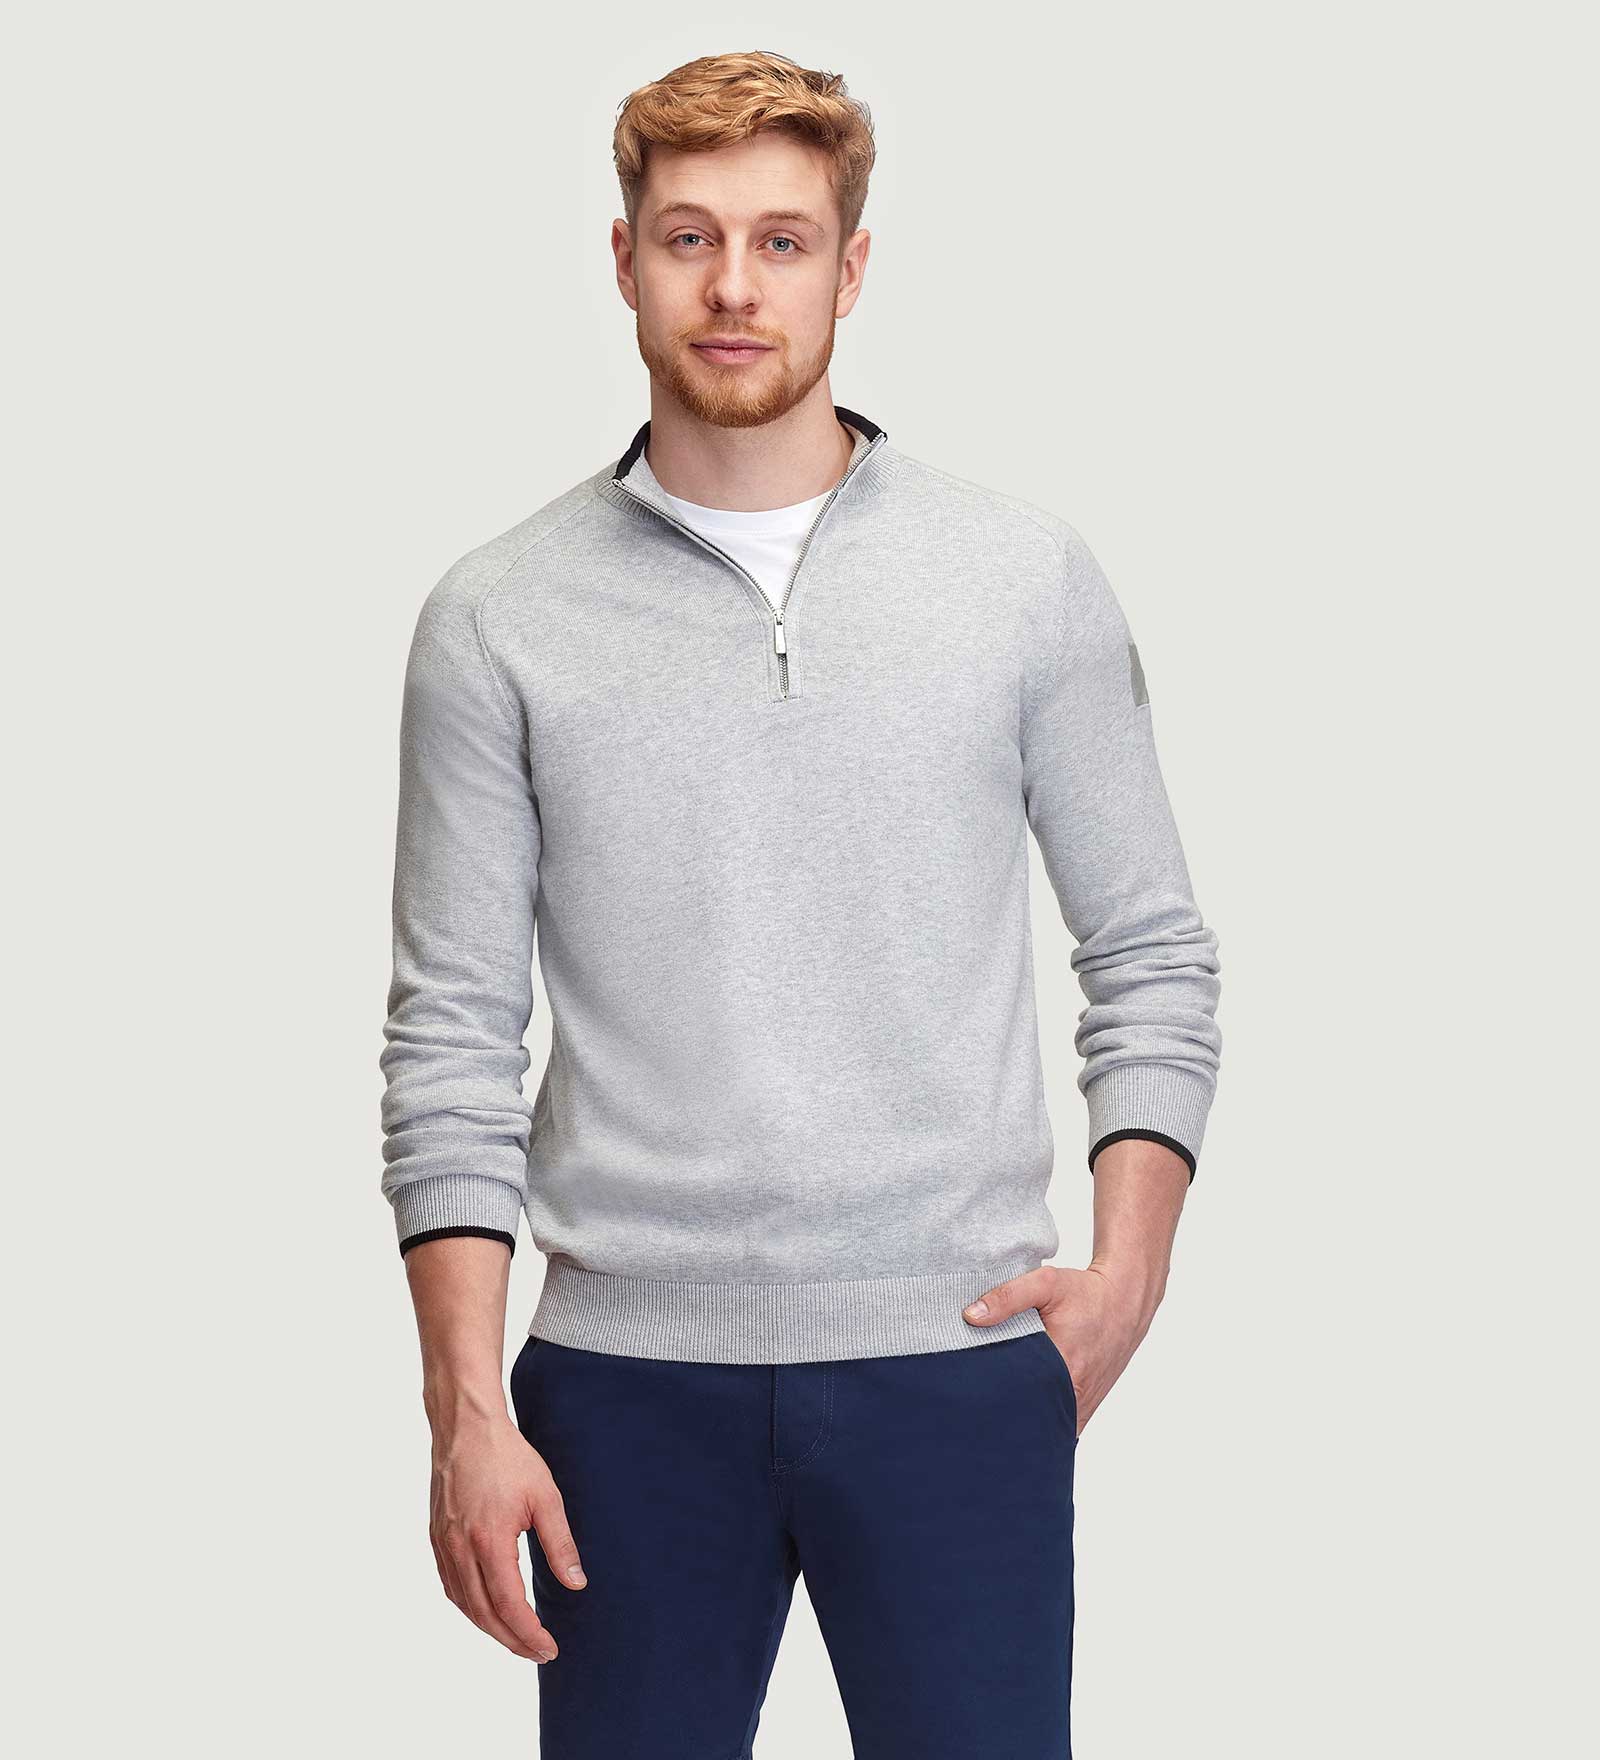 Half-Zip Sweater Men Rigging